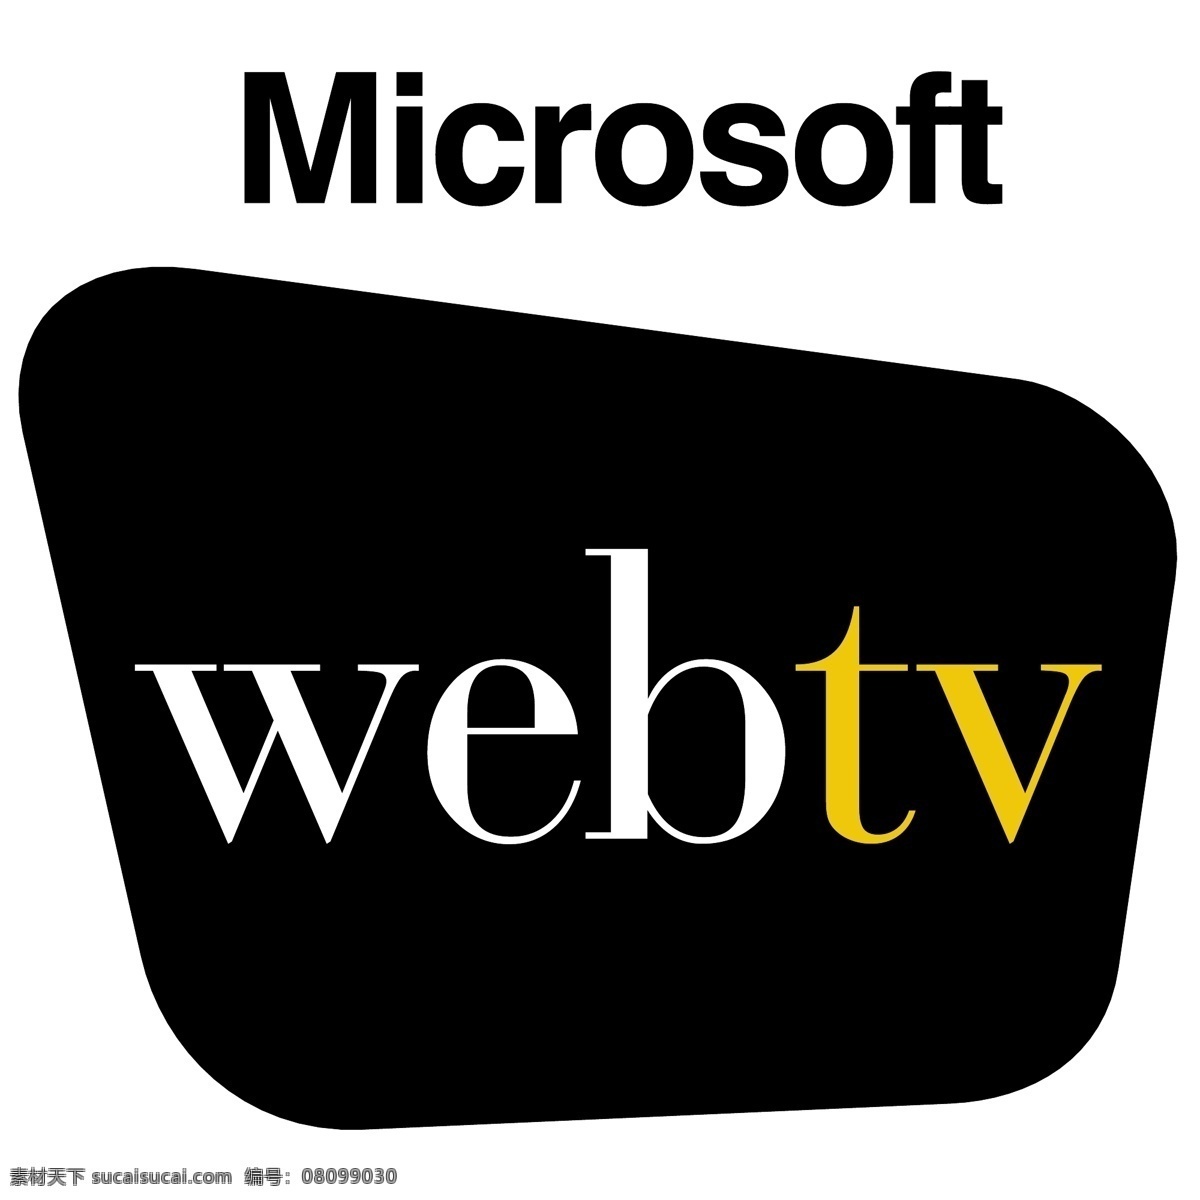 网络电视 标志 免费 psd源文件 logo设计